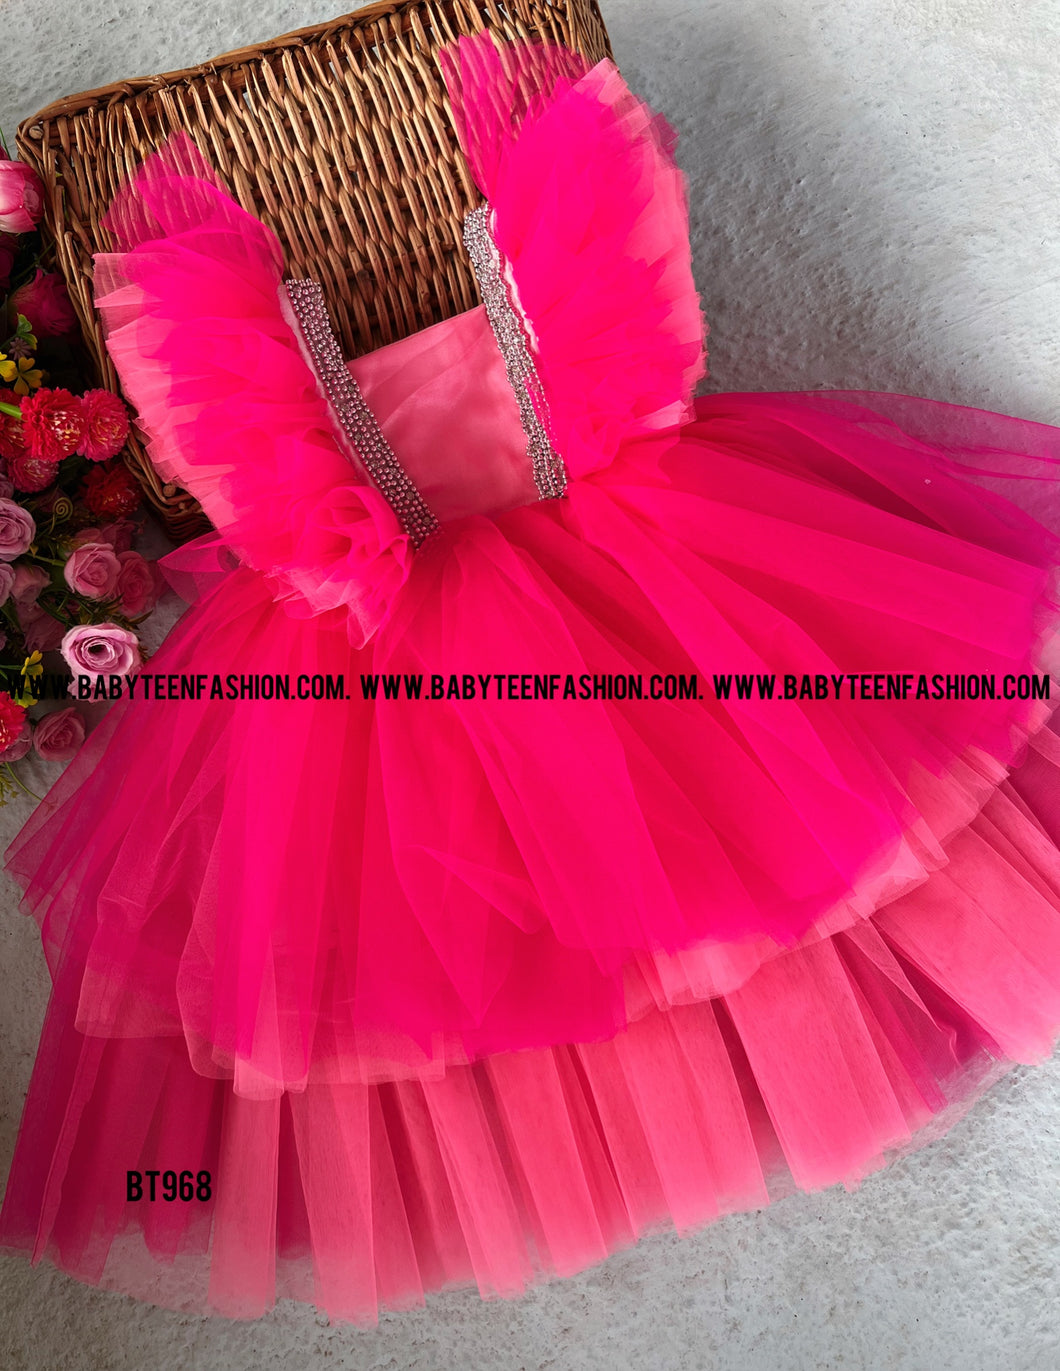 BT968 Fuchsia Fantasy Tutu – Dance in a Cascade of Pink